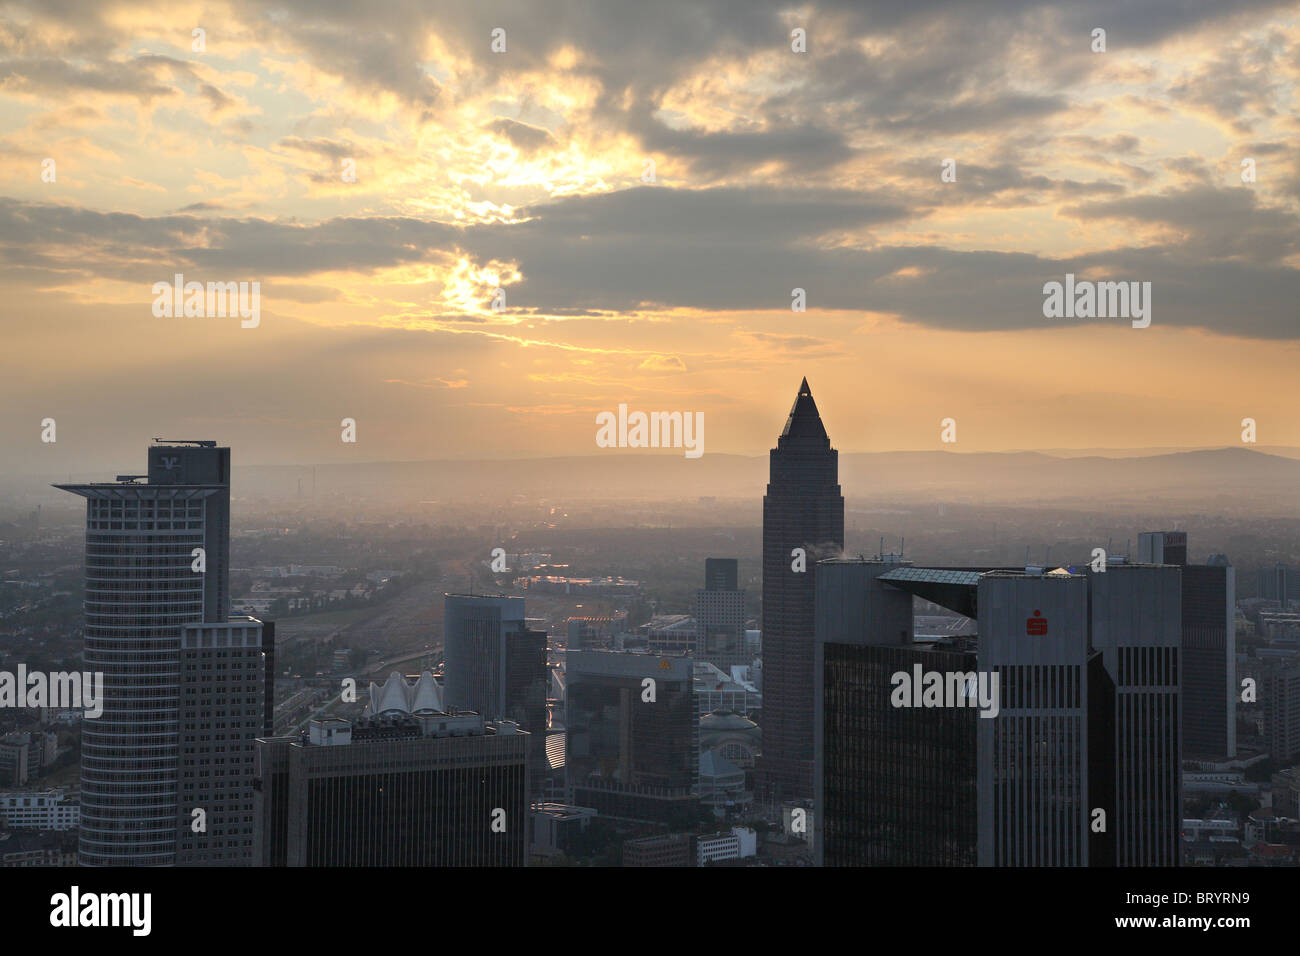 Skyline von financial District und Messeturm, Frankfurt am Main, Deutschland Stockfoto